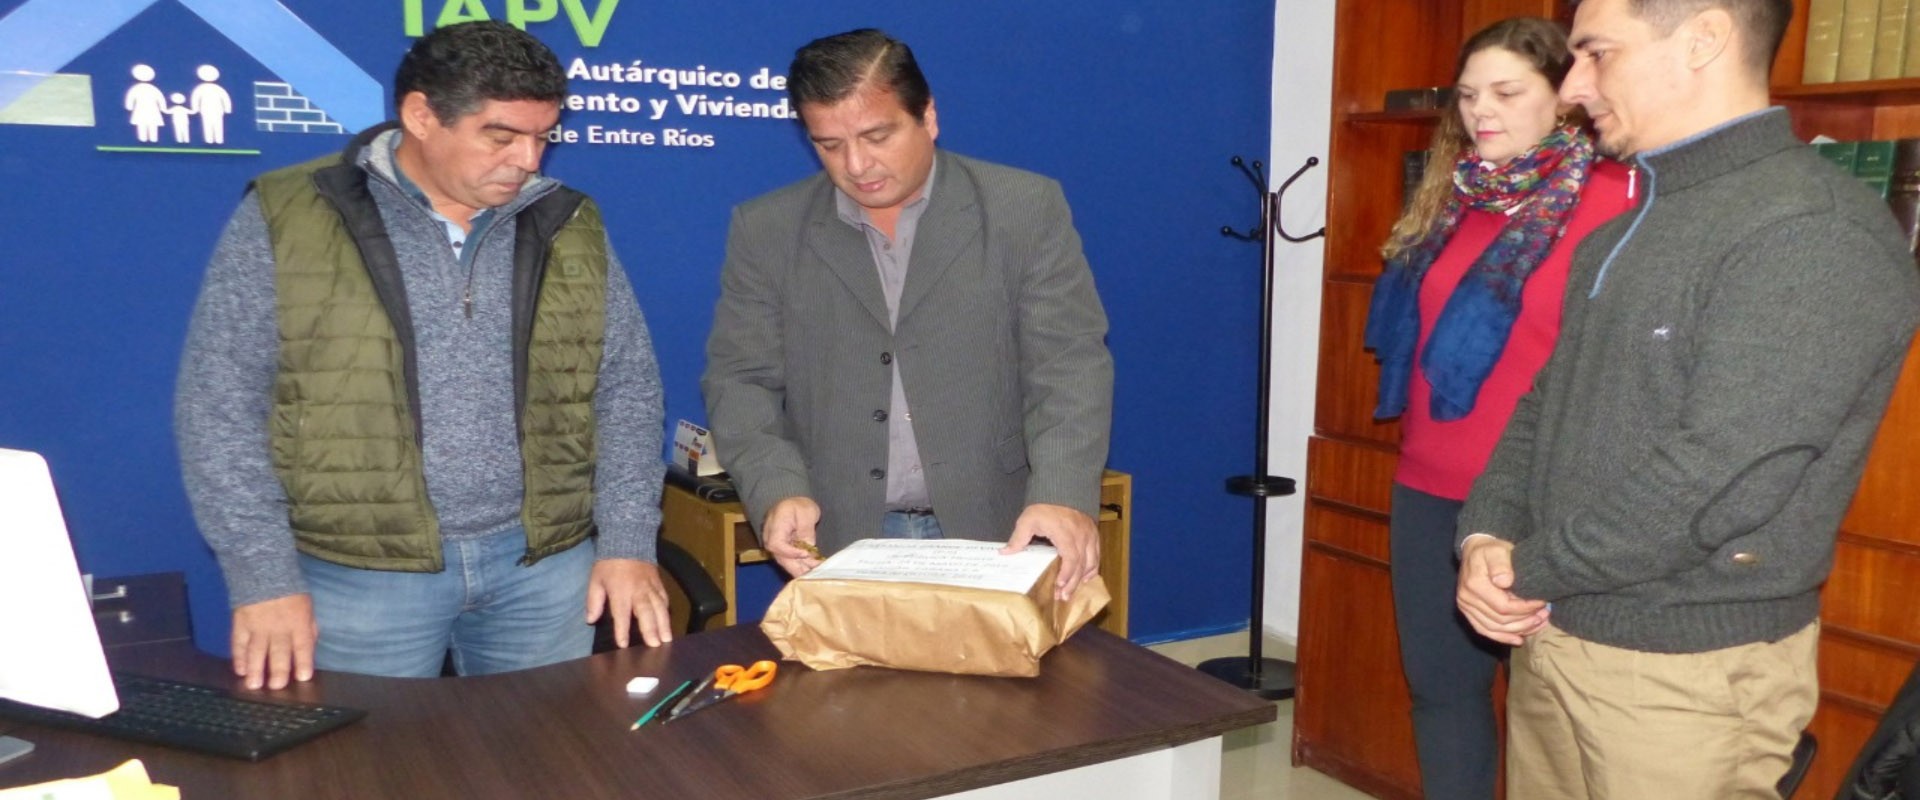 Se licitaron 37 nuevas viviendas para tres localidades entrerrianas